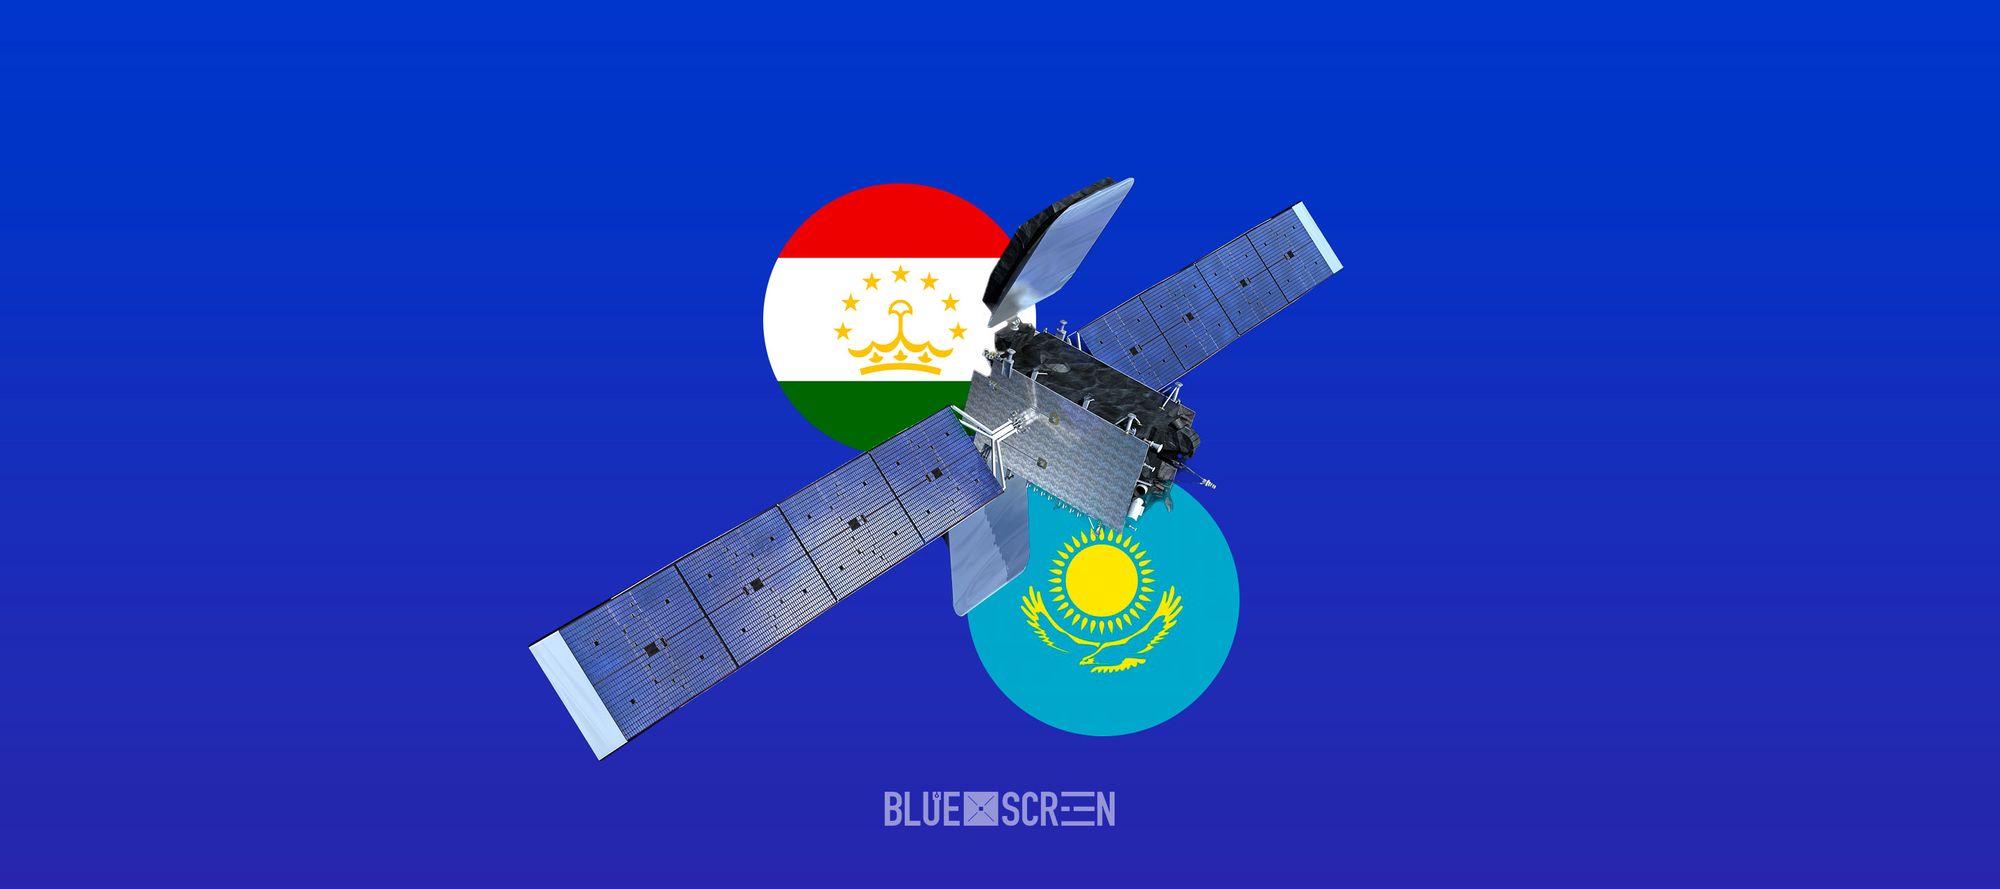 Казахстан предоставит услуги космической связи Таджикистану